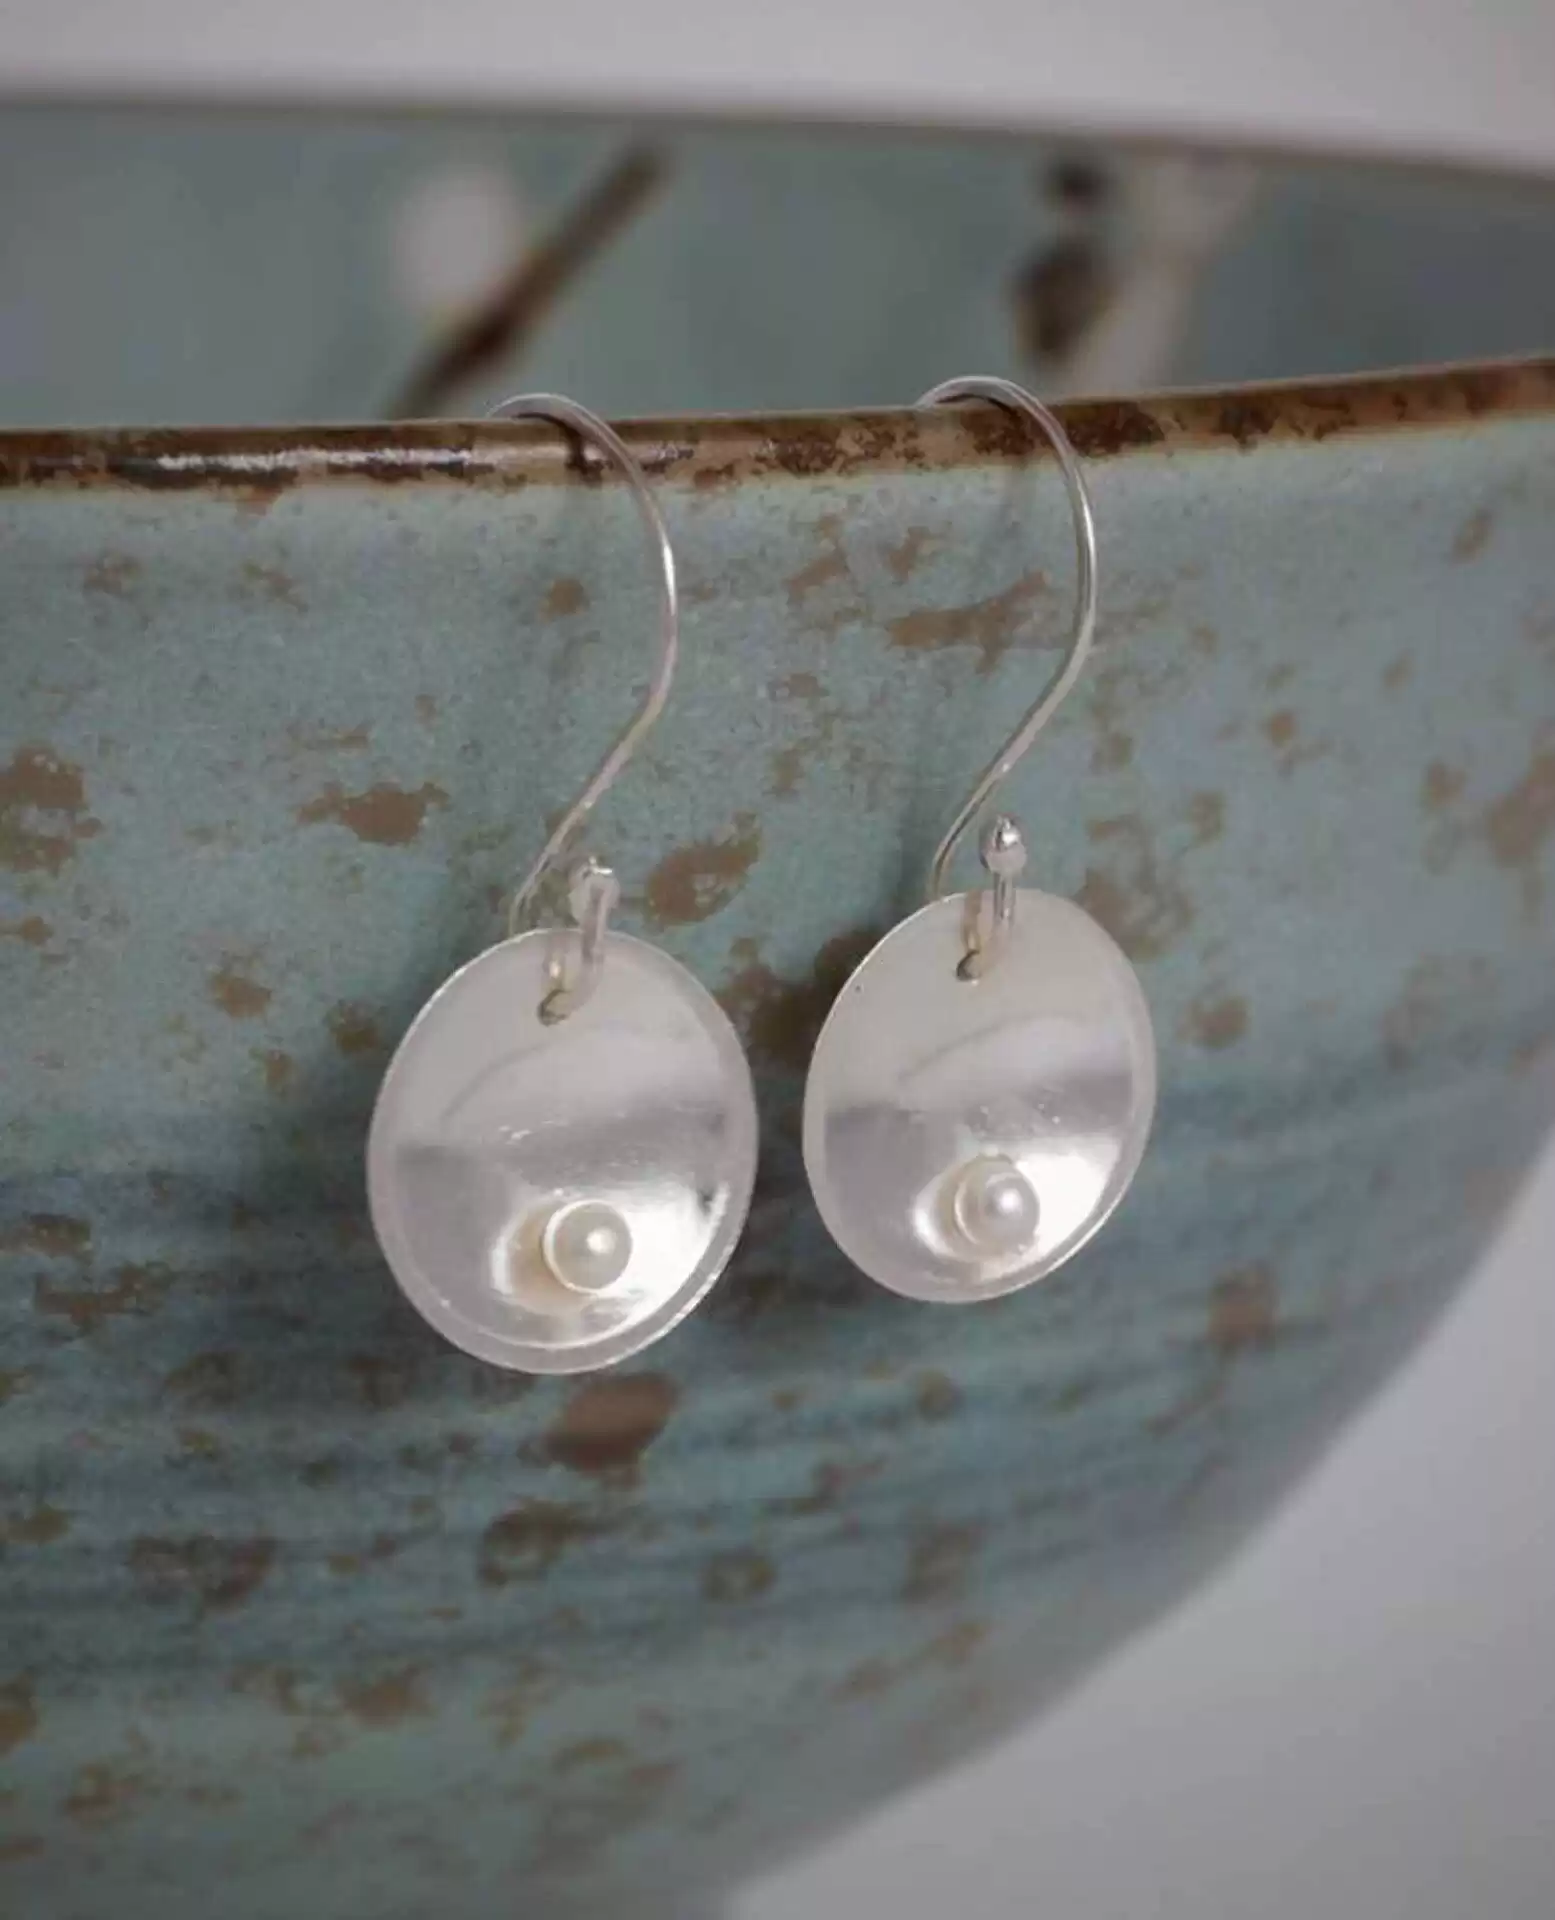 Silver pearl earrings